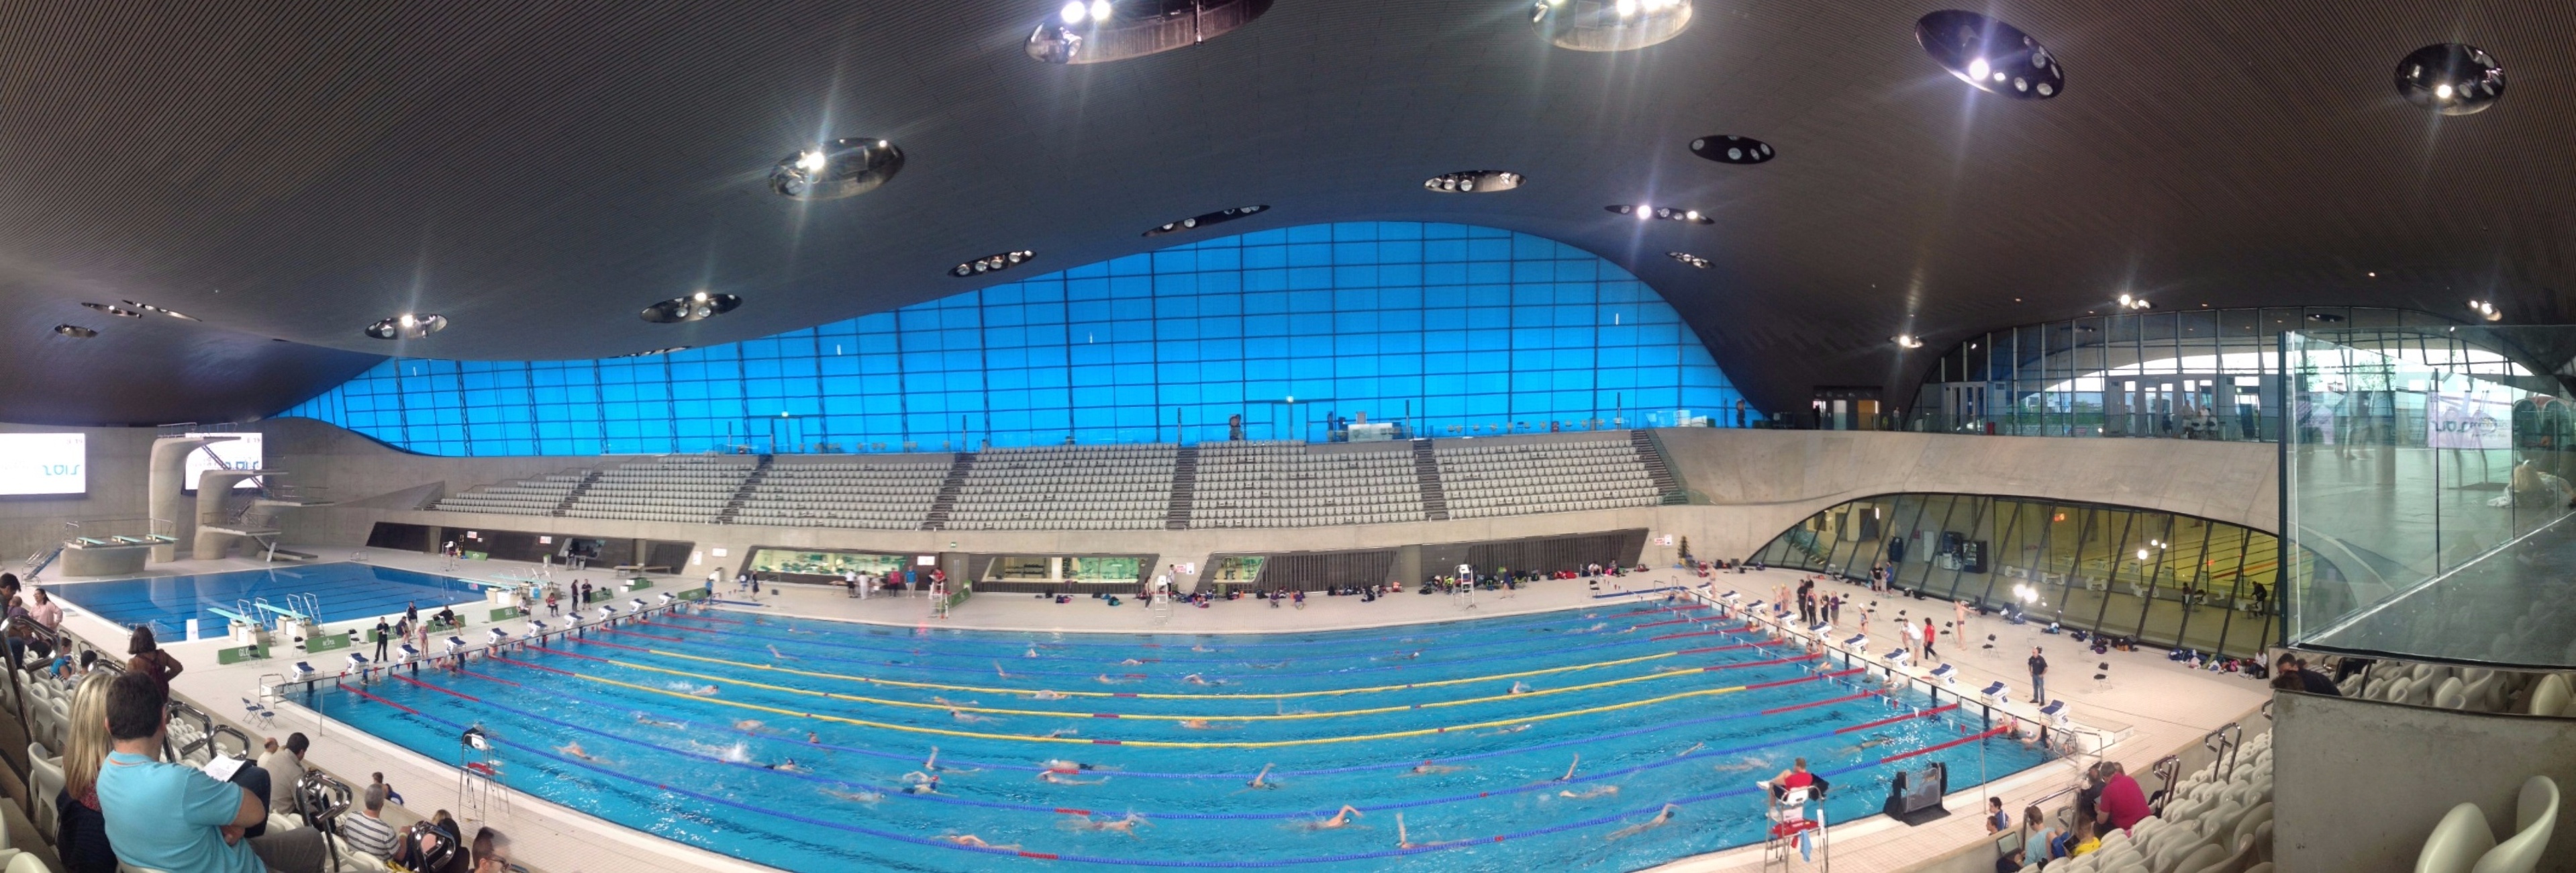 London aquatic centre panorama (2).JPG